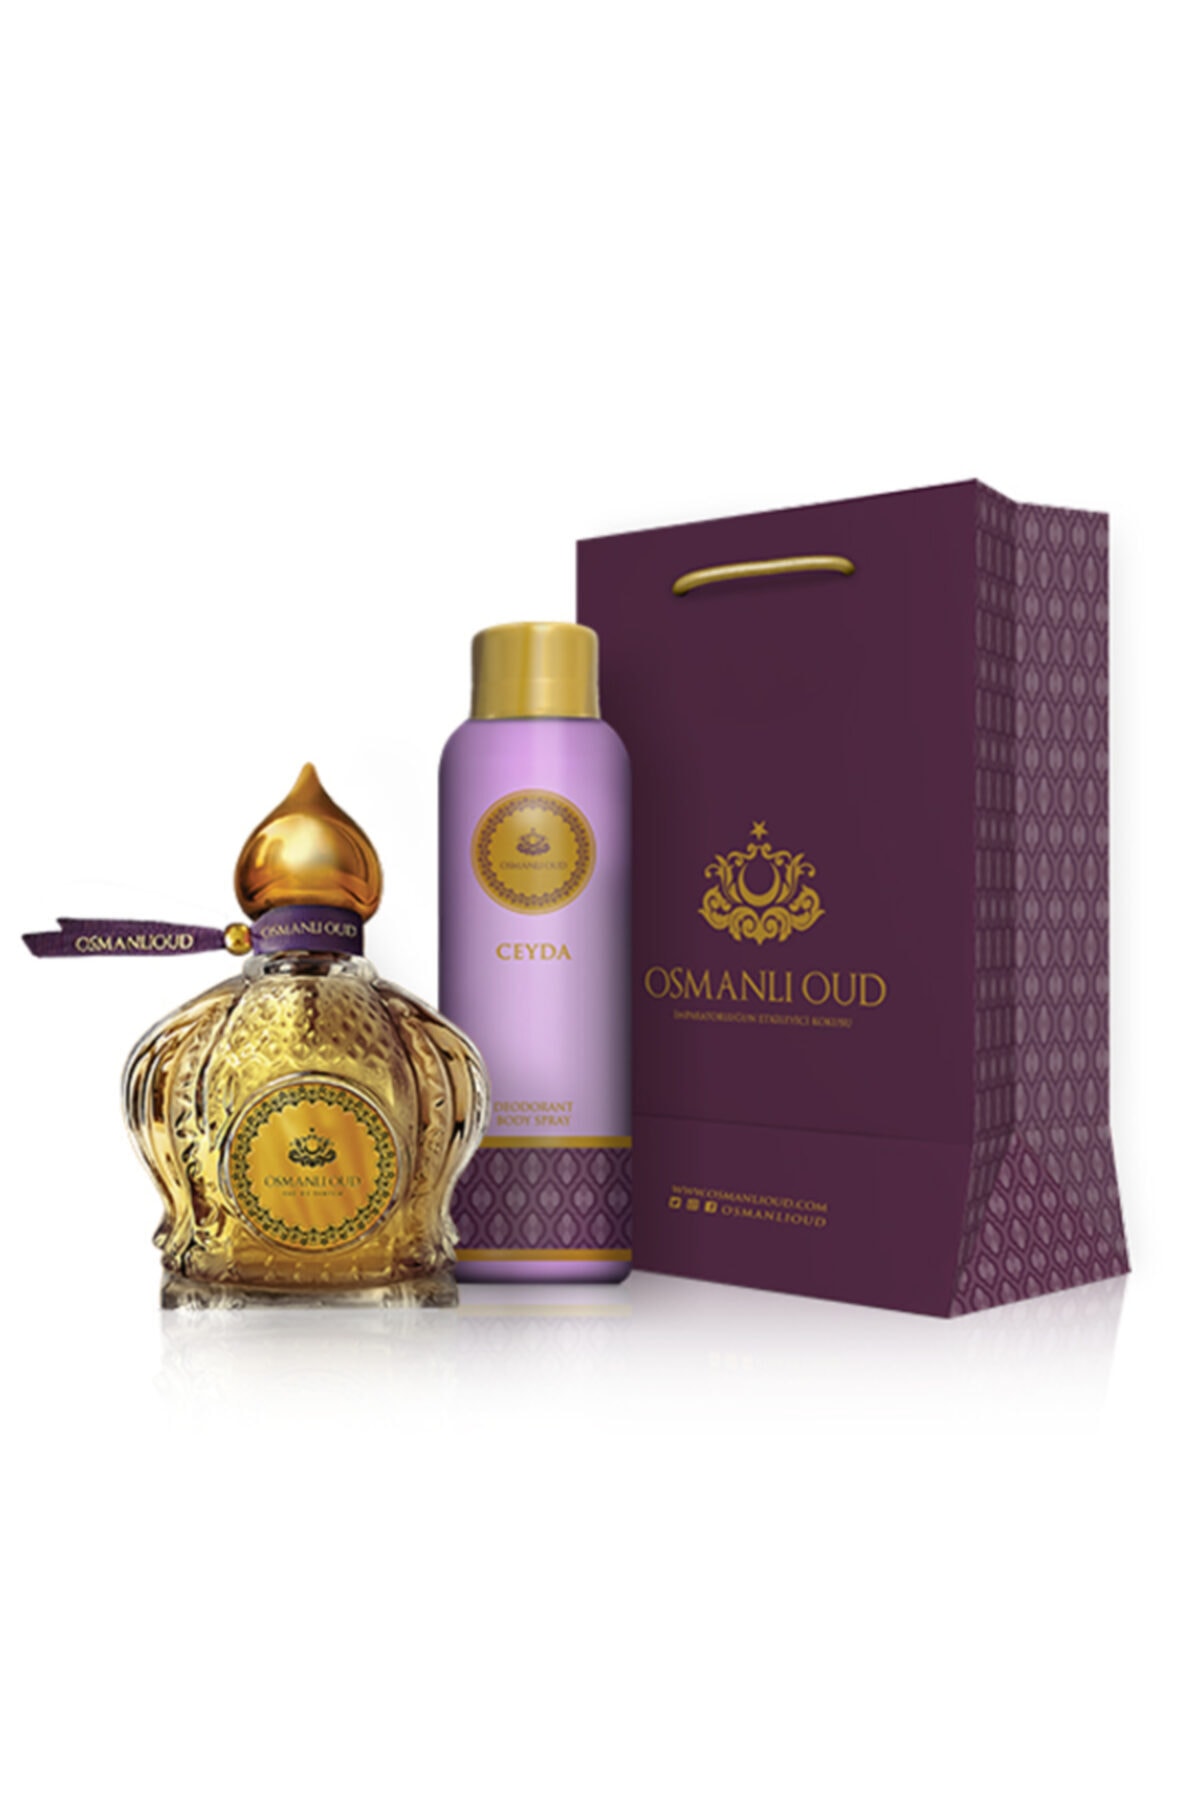 Osmanlı Oud Ceyda Edp 65 ml Kadın Parfüm 150 ml Deodorant 9807